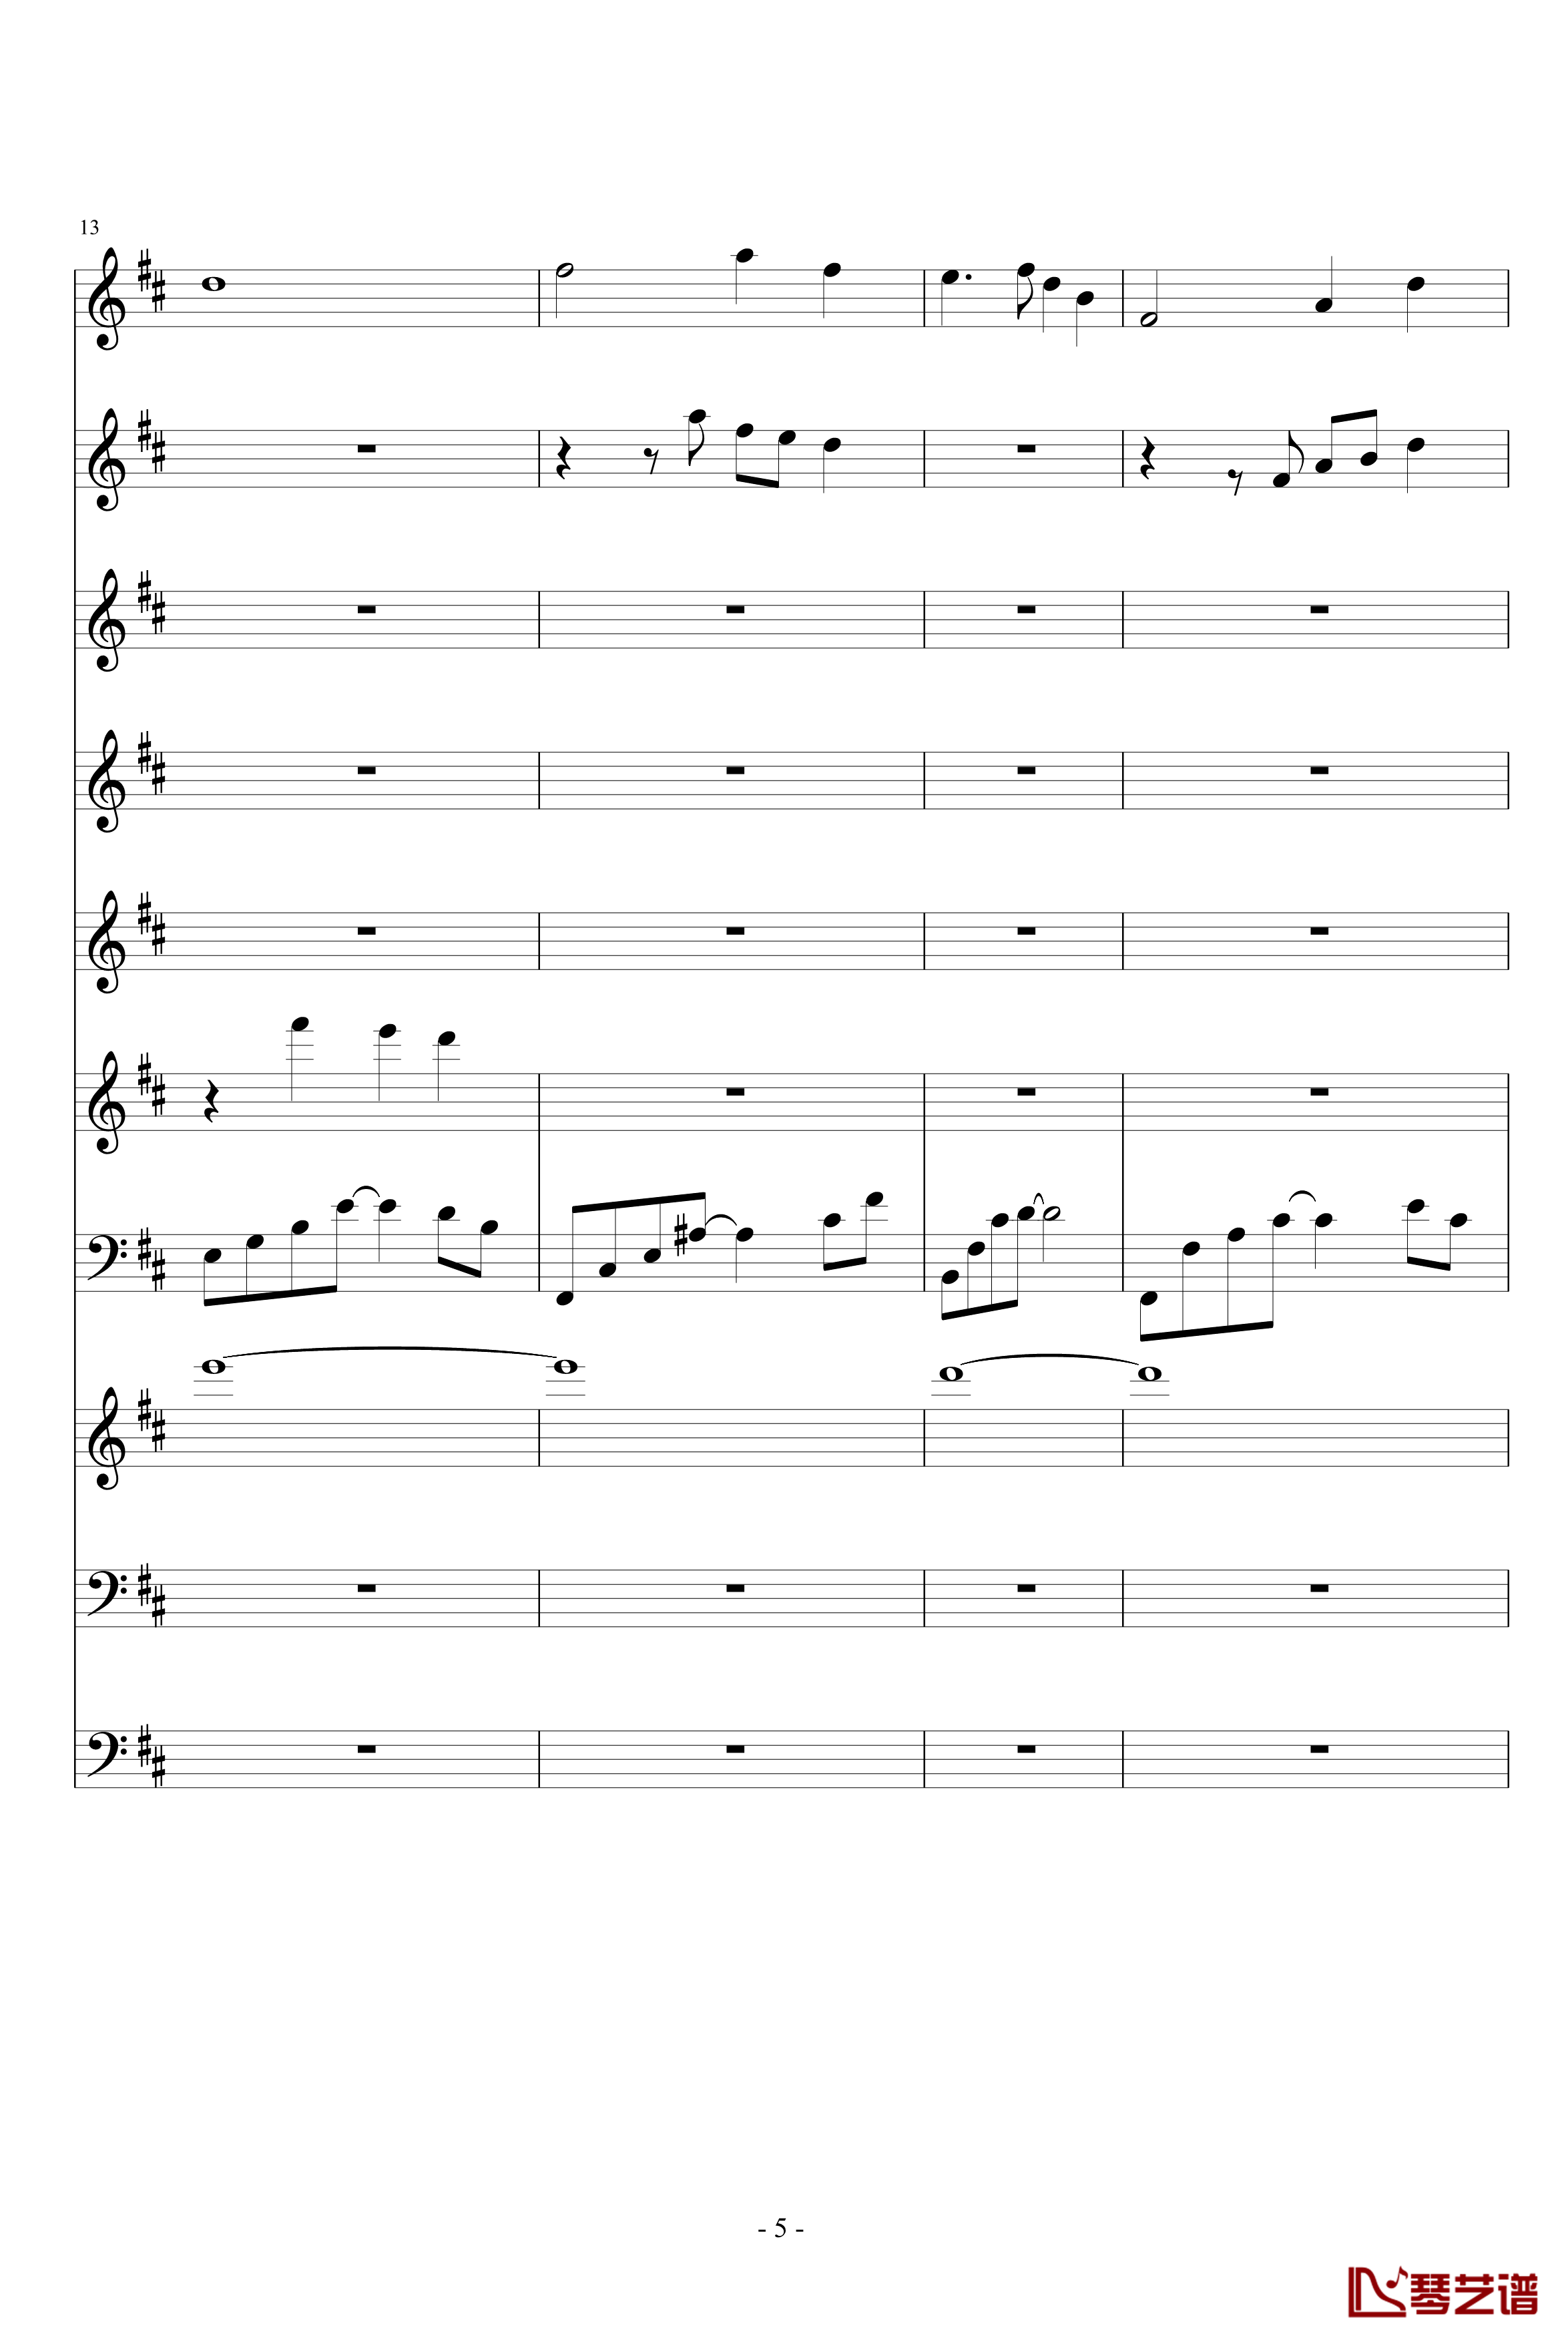 月落暗香坡钢琴谱-巴乌、笛子、琵琶、二胡、古筝-peterkingily5